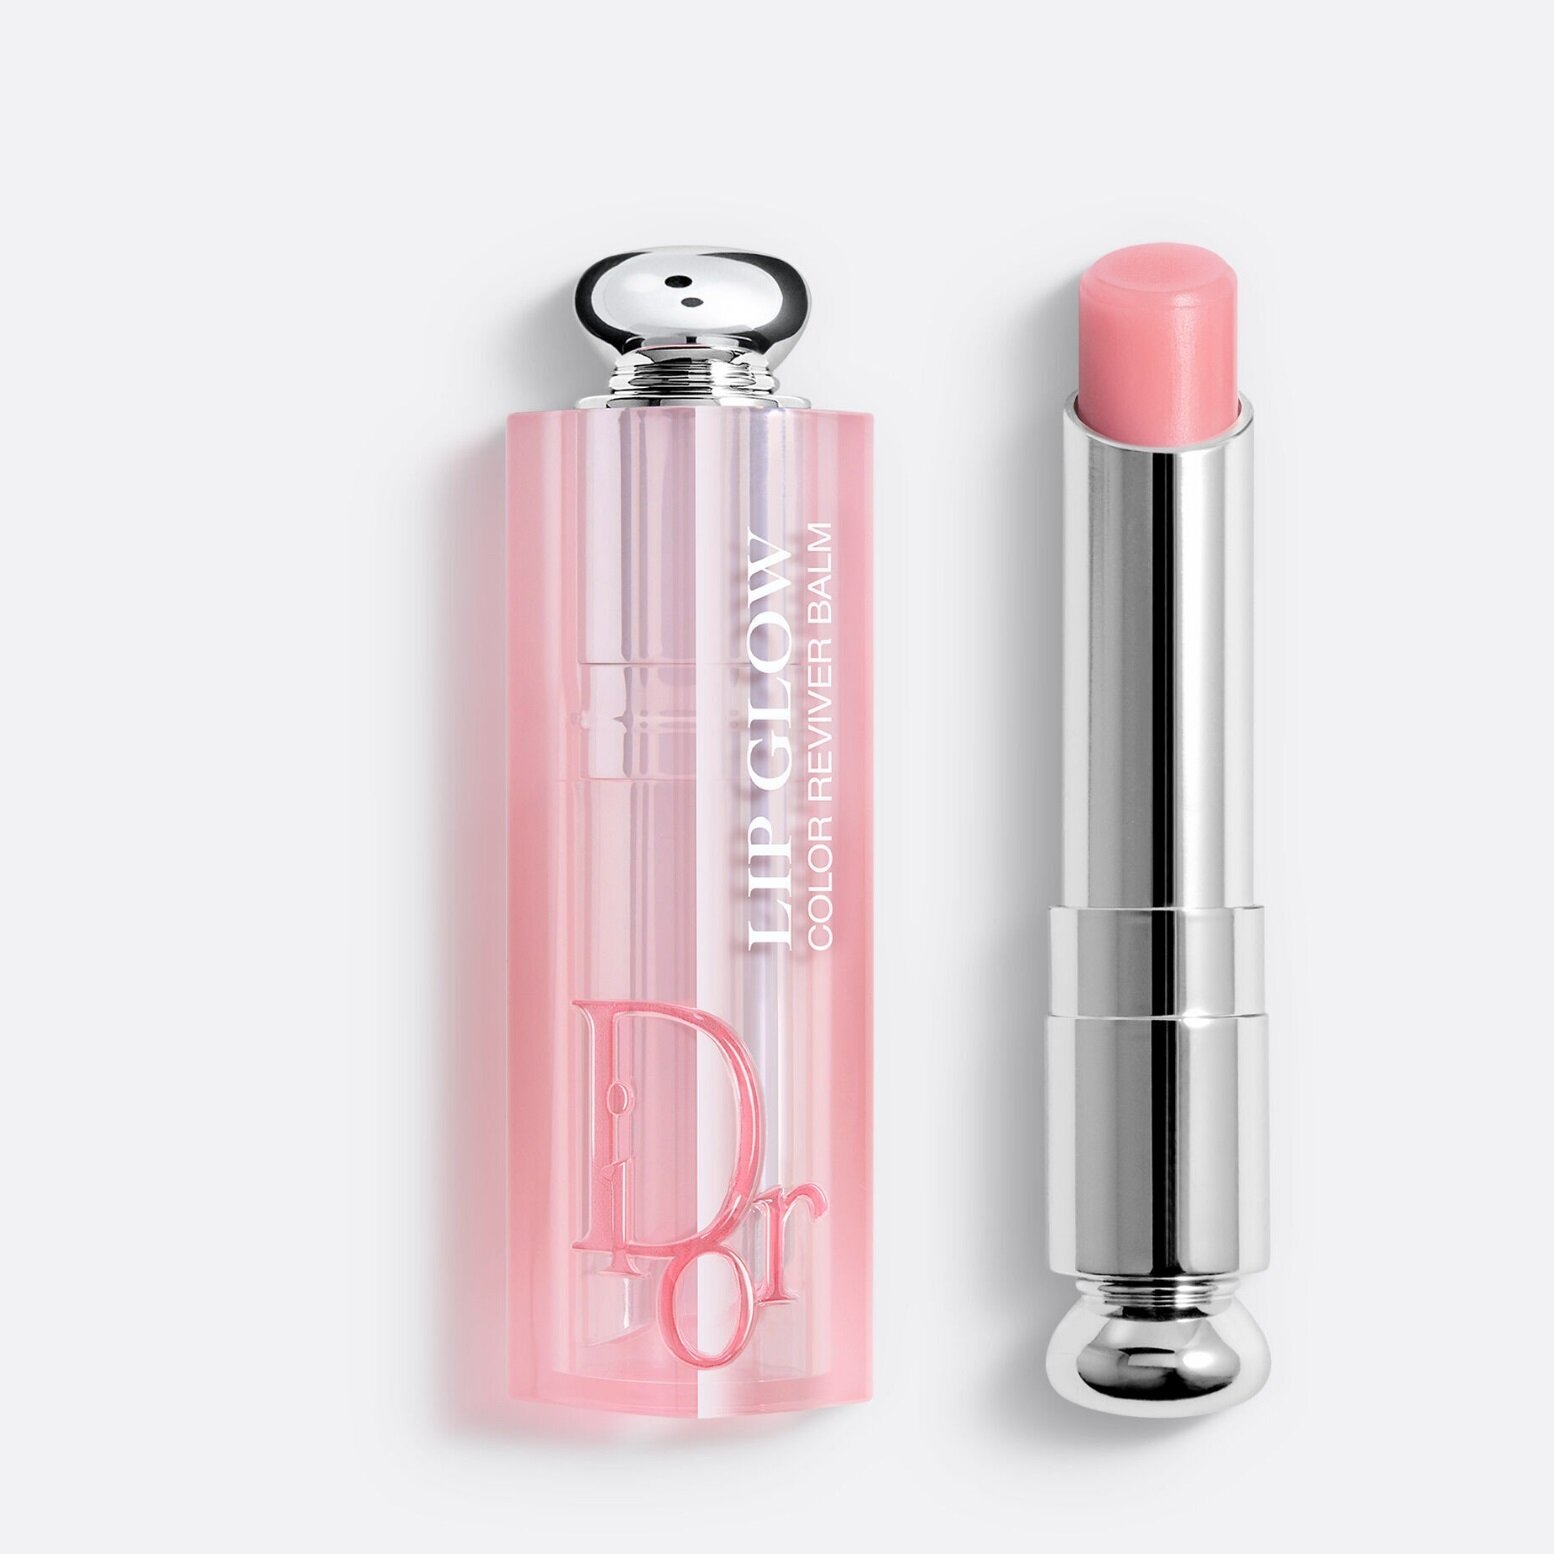 Dior Бальзам для губ Addict Lip Glow, 001 pink